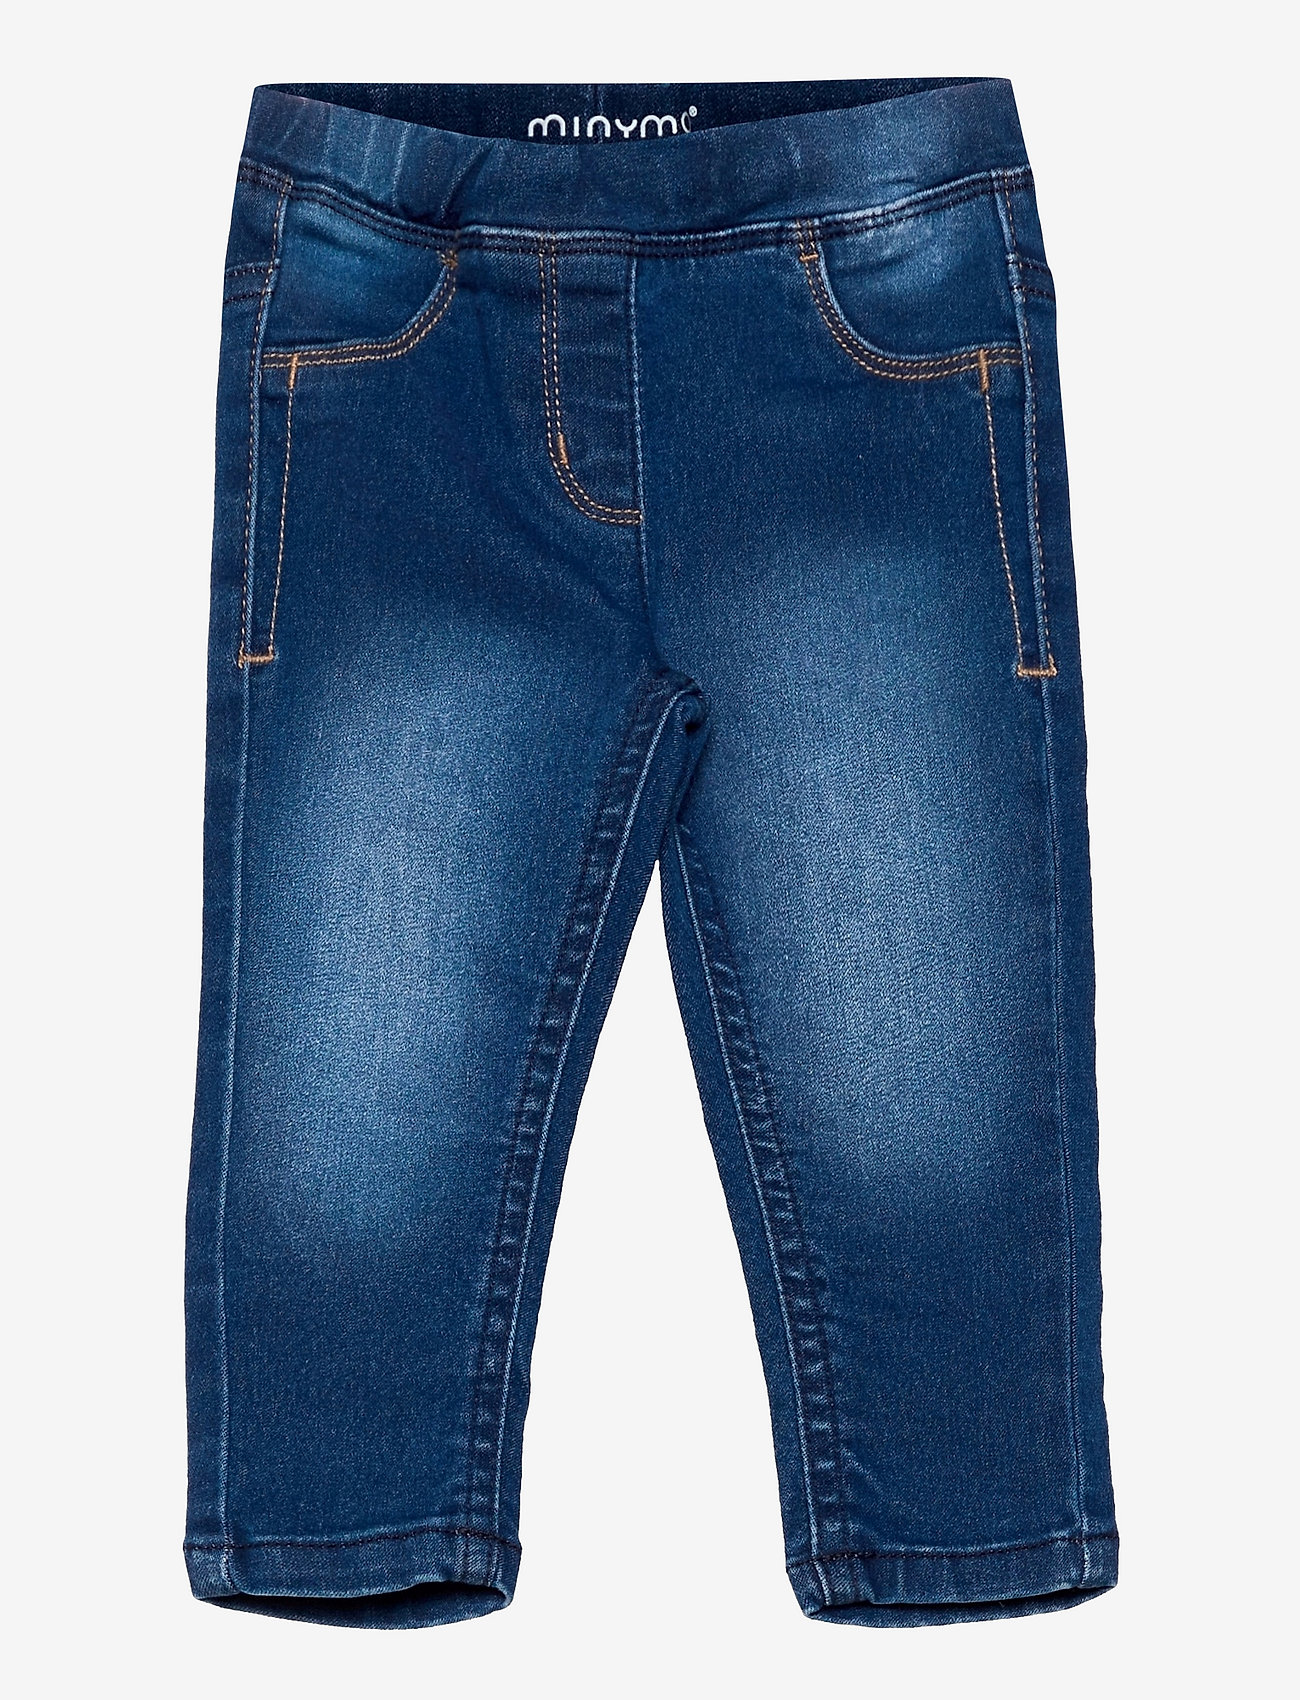 Minymo - Jeans girl stretch slim fit - skinny jeans - denim - 0